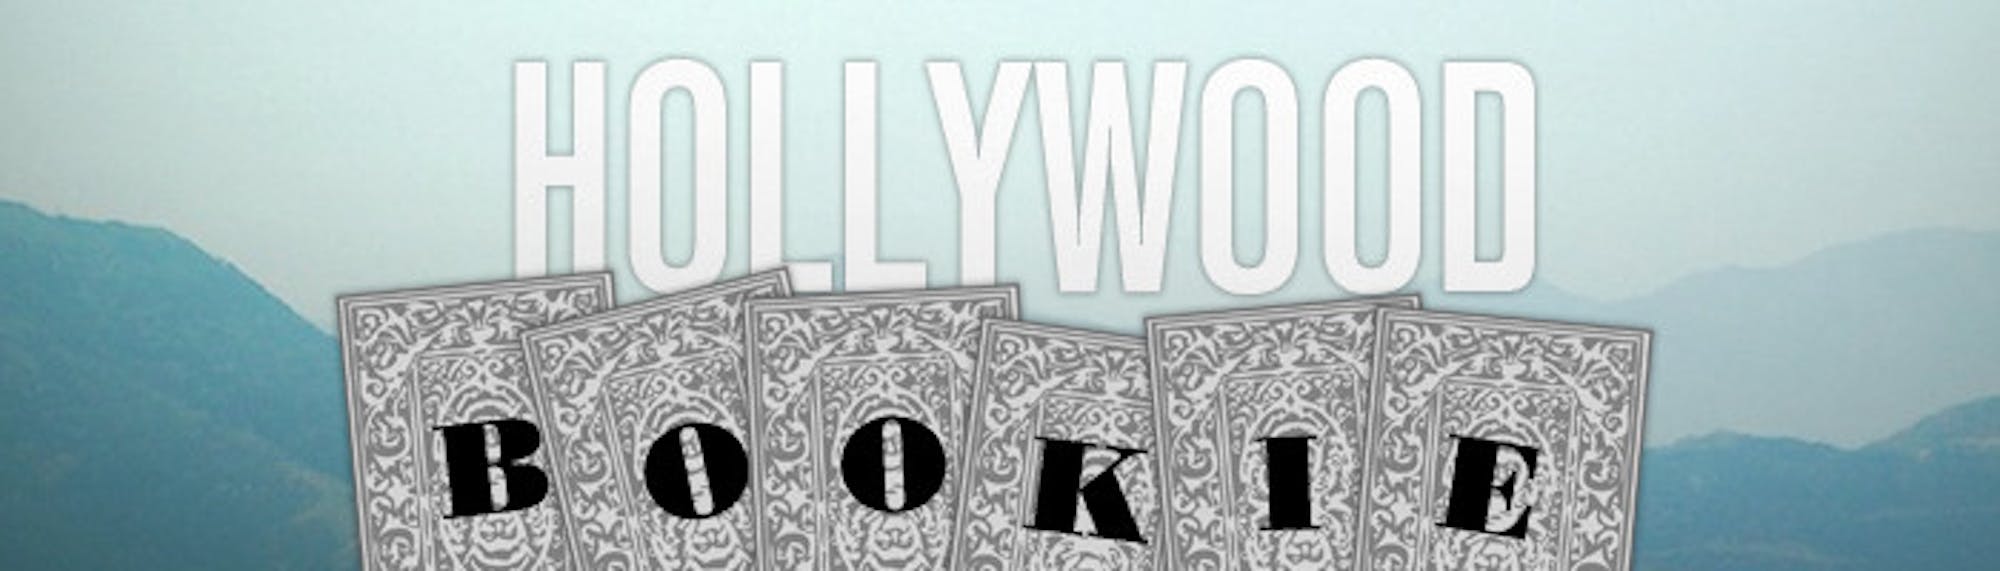 HollywoodBookie_WEB